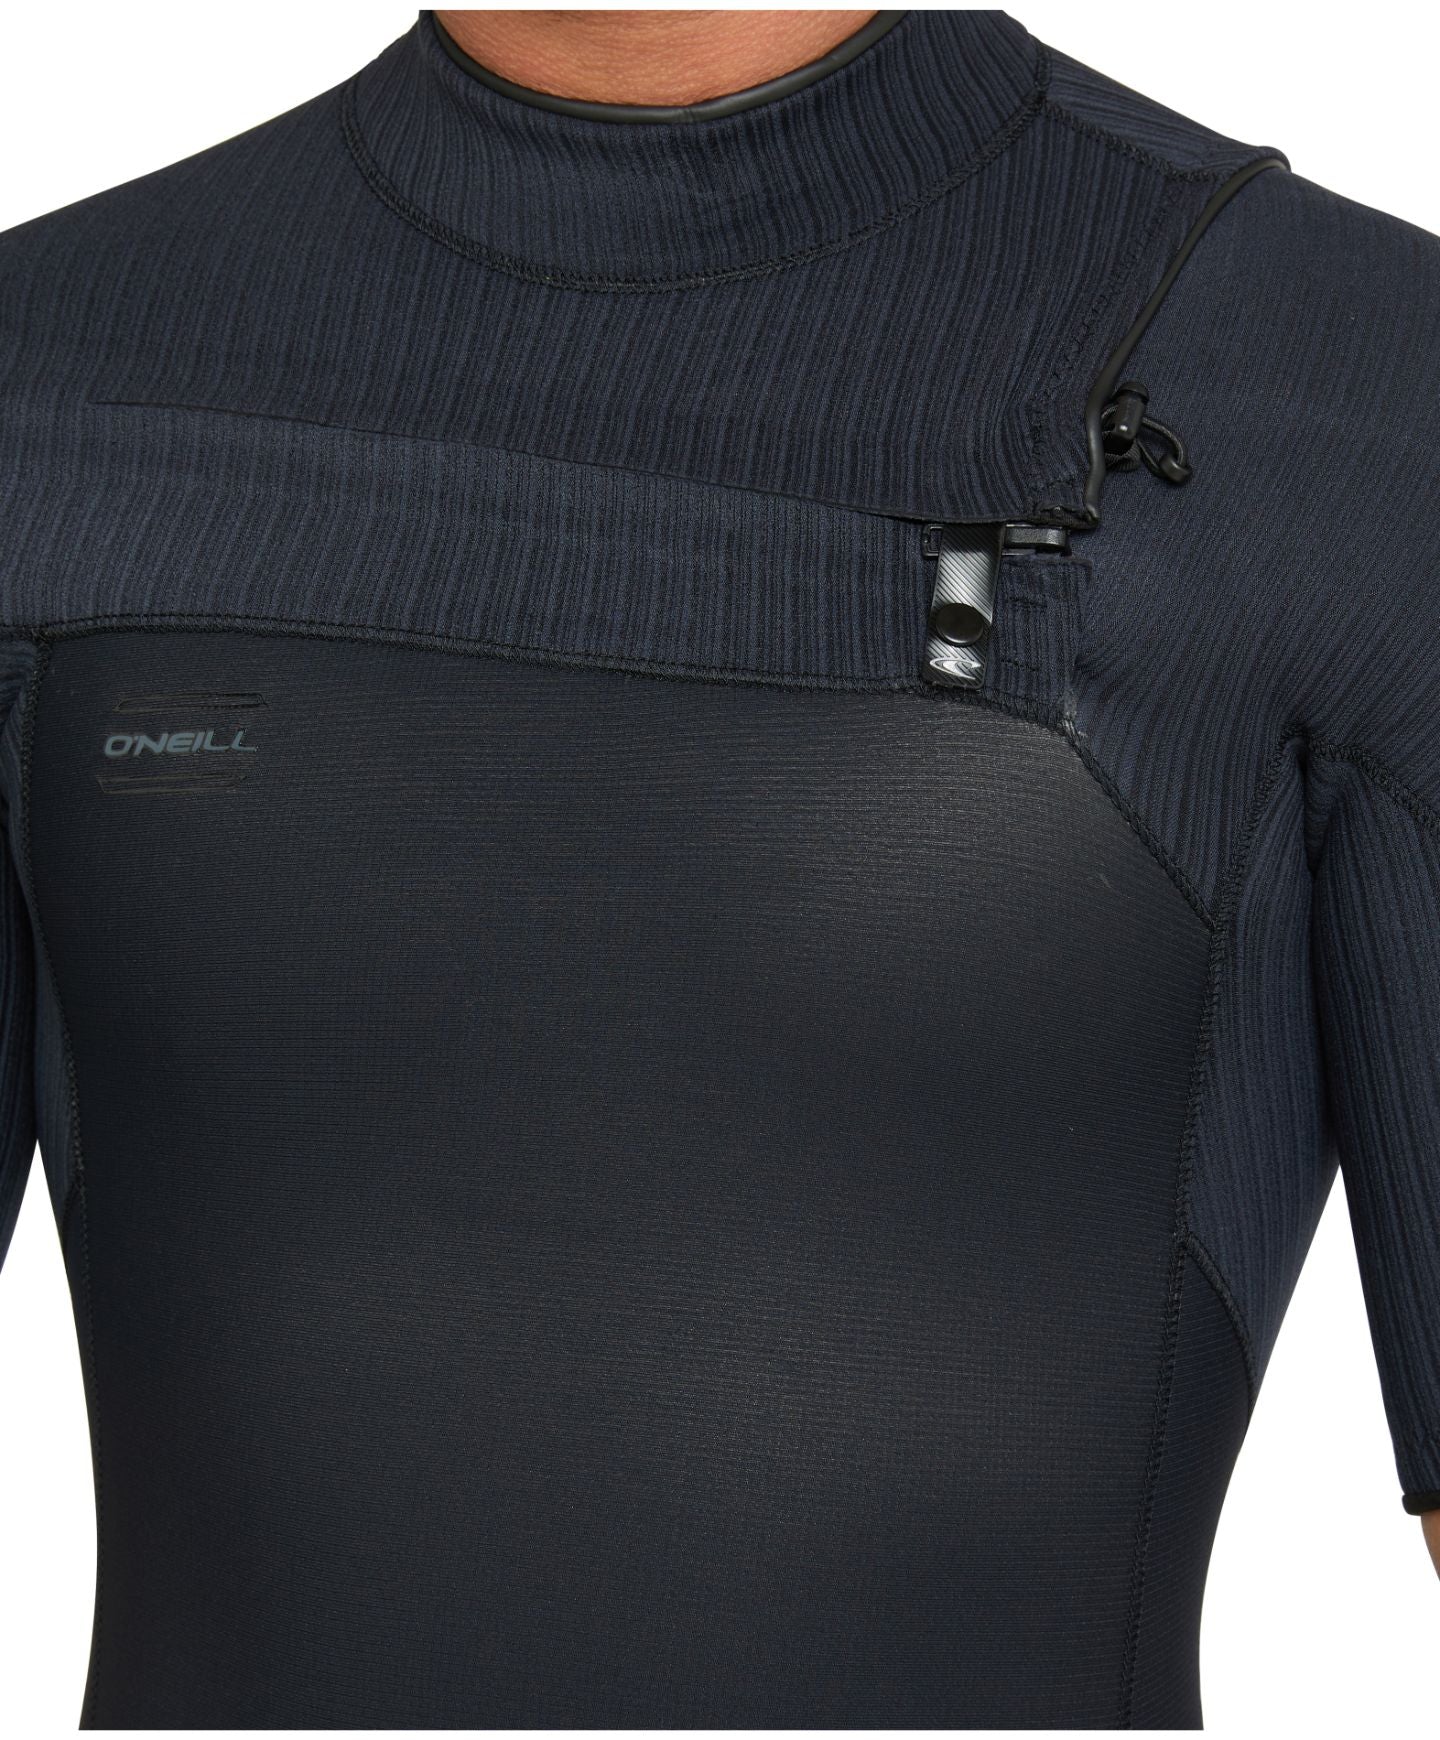 HyperFreak Short Sleeve Springsuit 2mm Chest Zip Wetsuit - Black